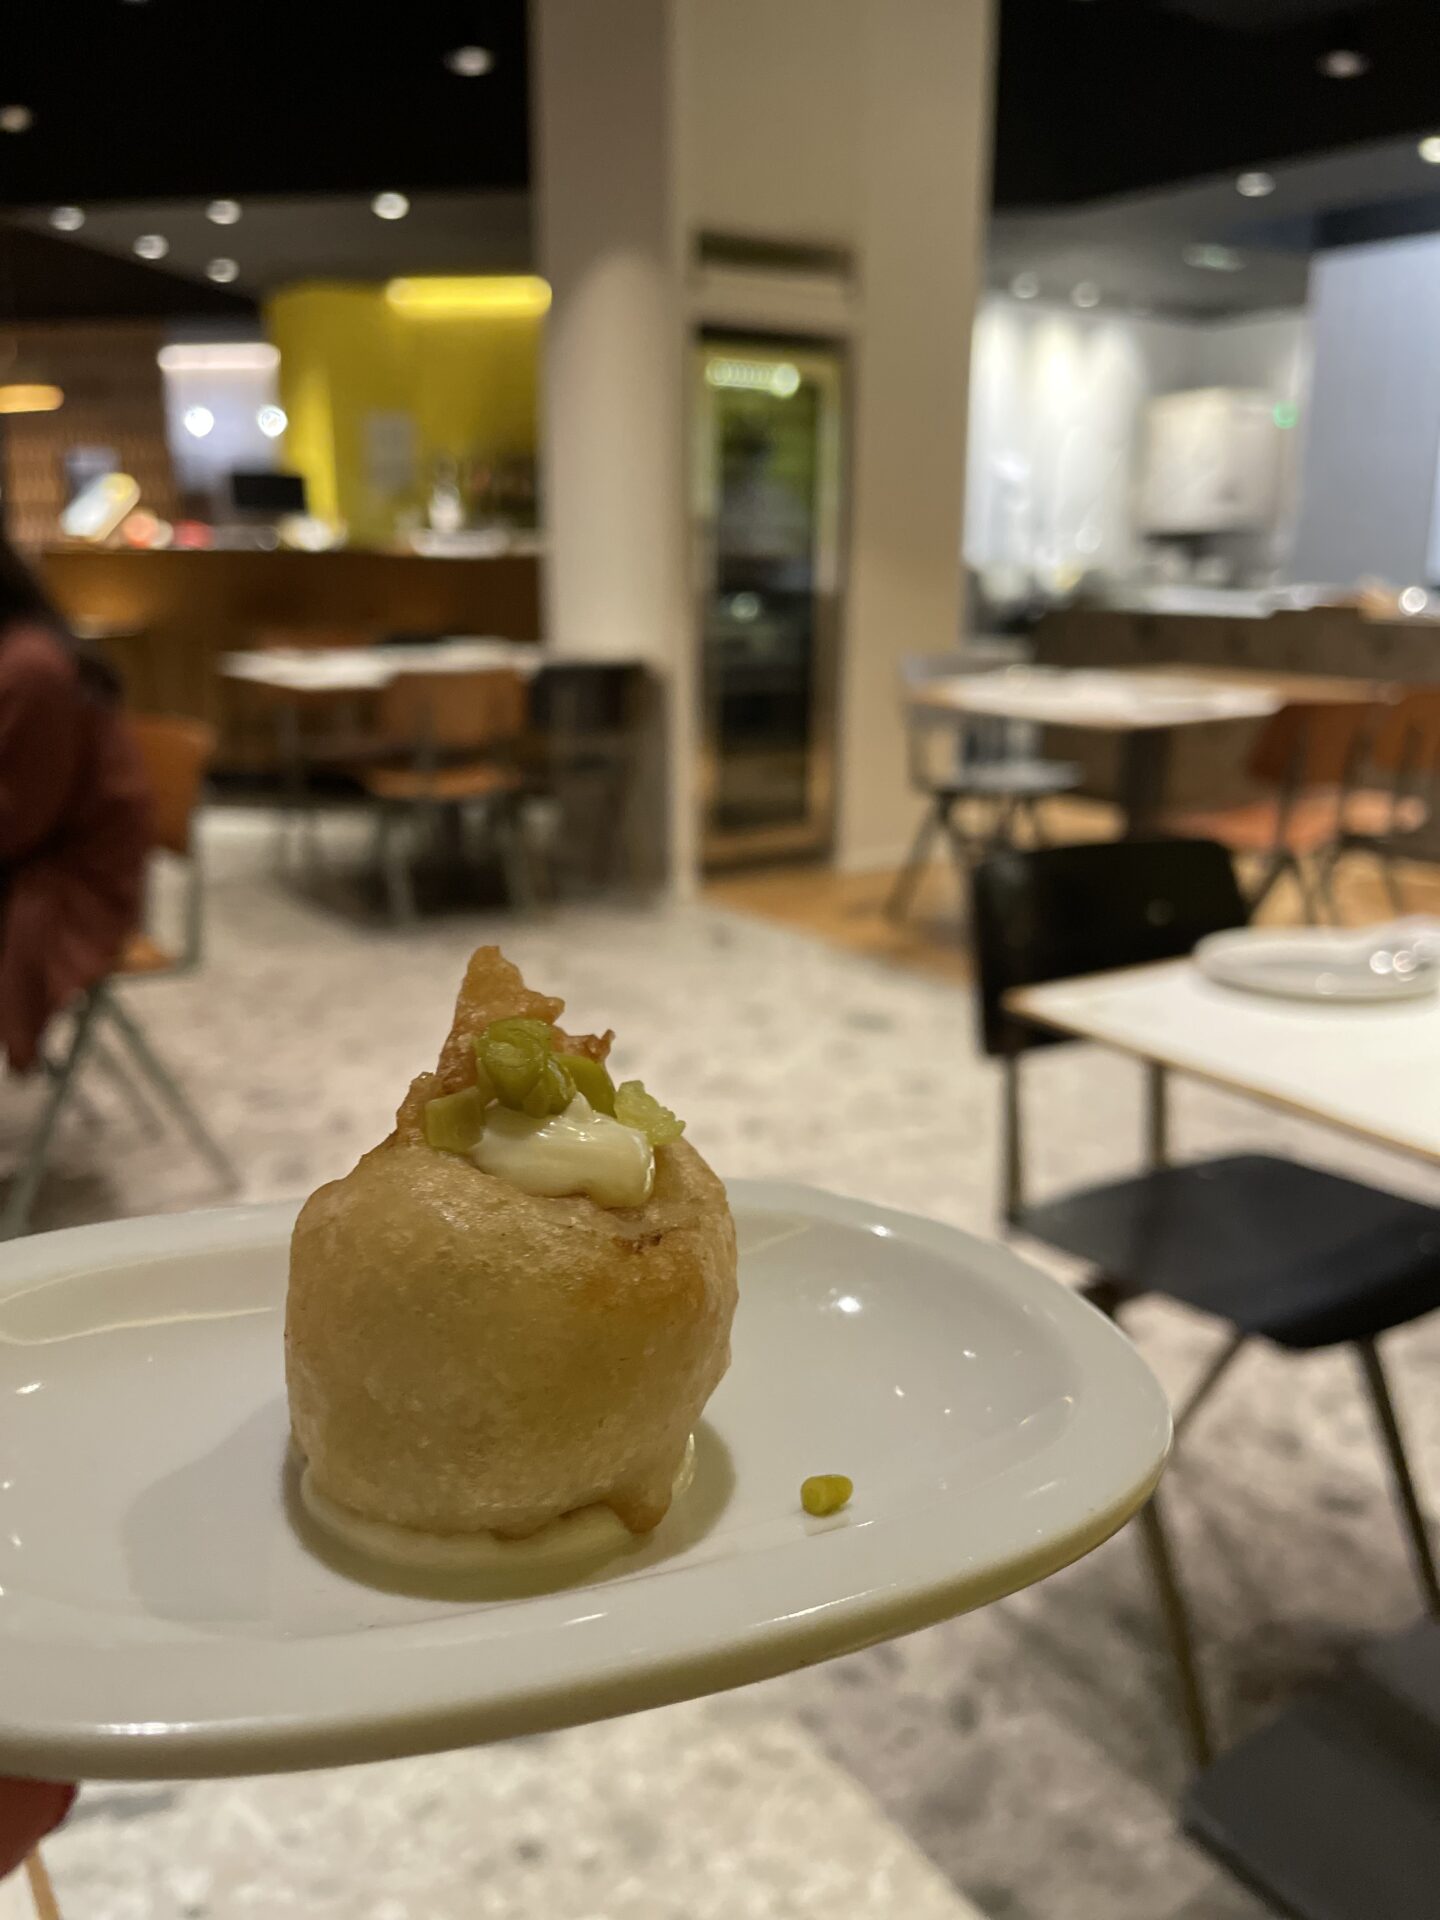 Cuina oberta bij Baalbec - Restaurants ontdekken tijdens de Valencia restaurant week - Culinaire reis tips van Foodblog Foodinista